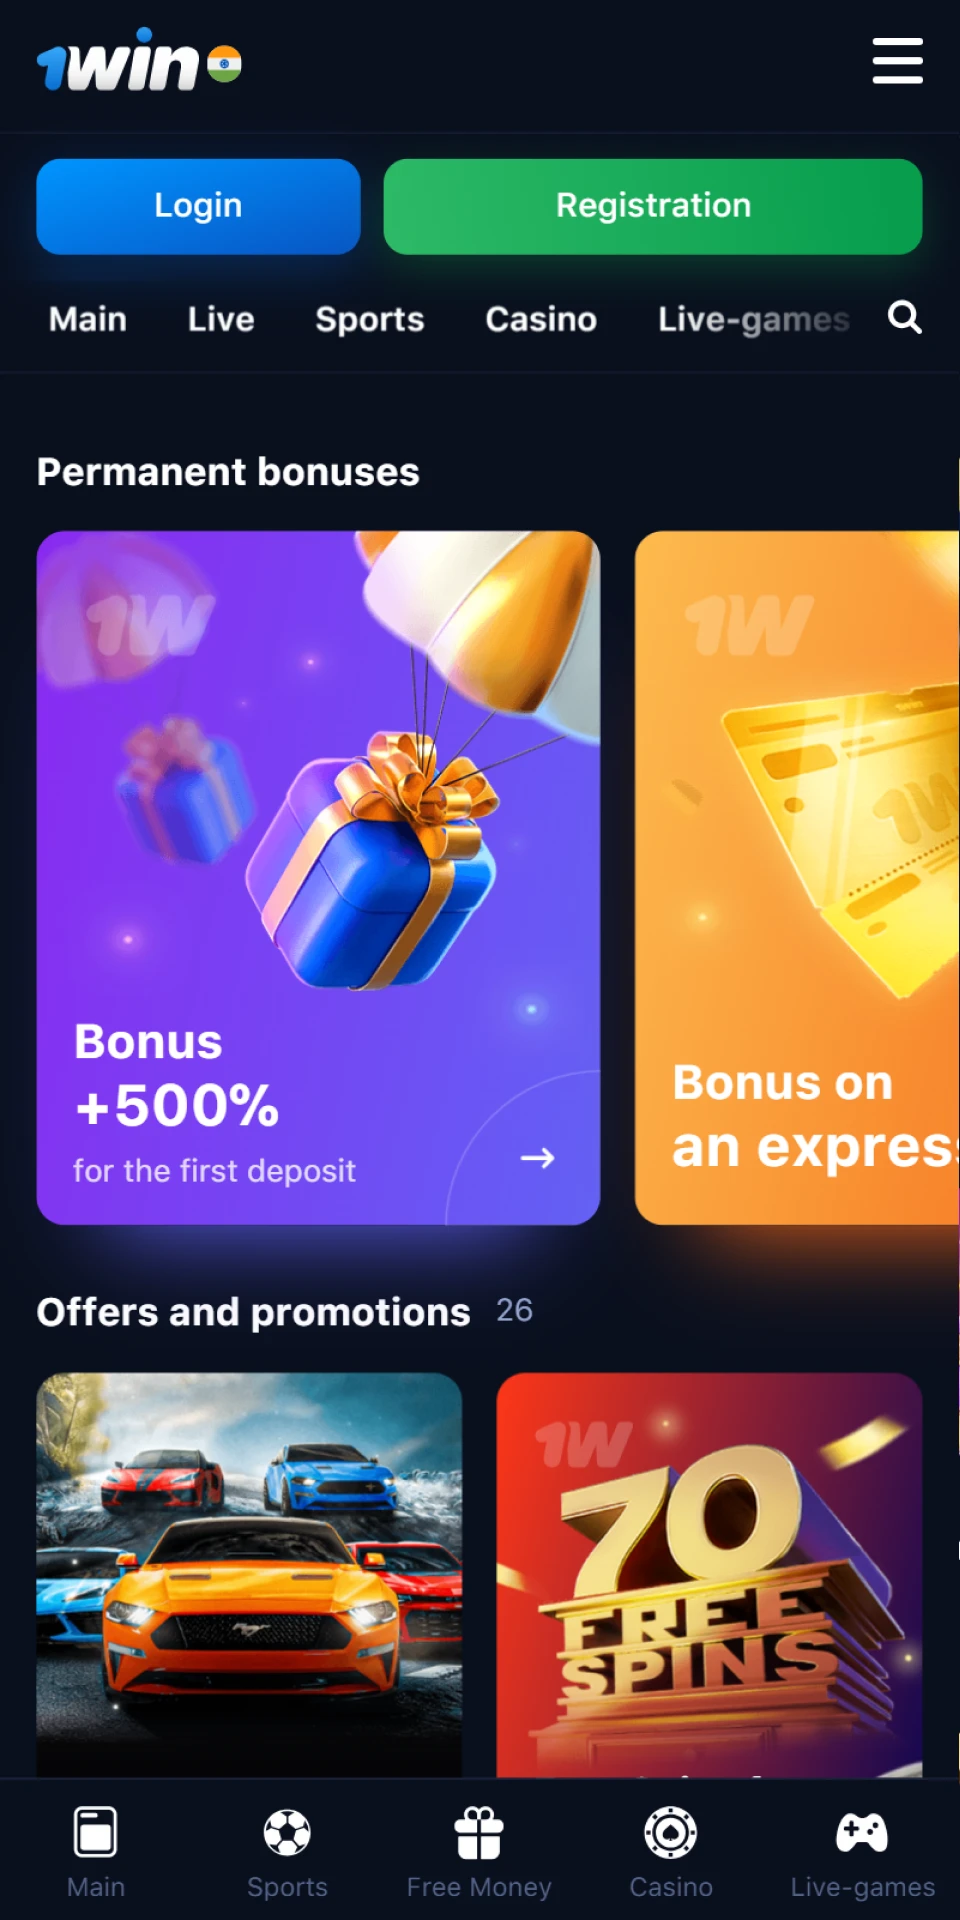 Choose your favorite 1Win bonus in their app.